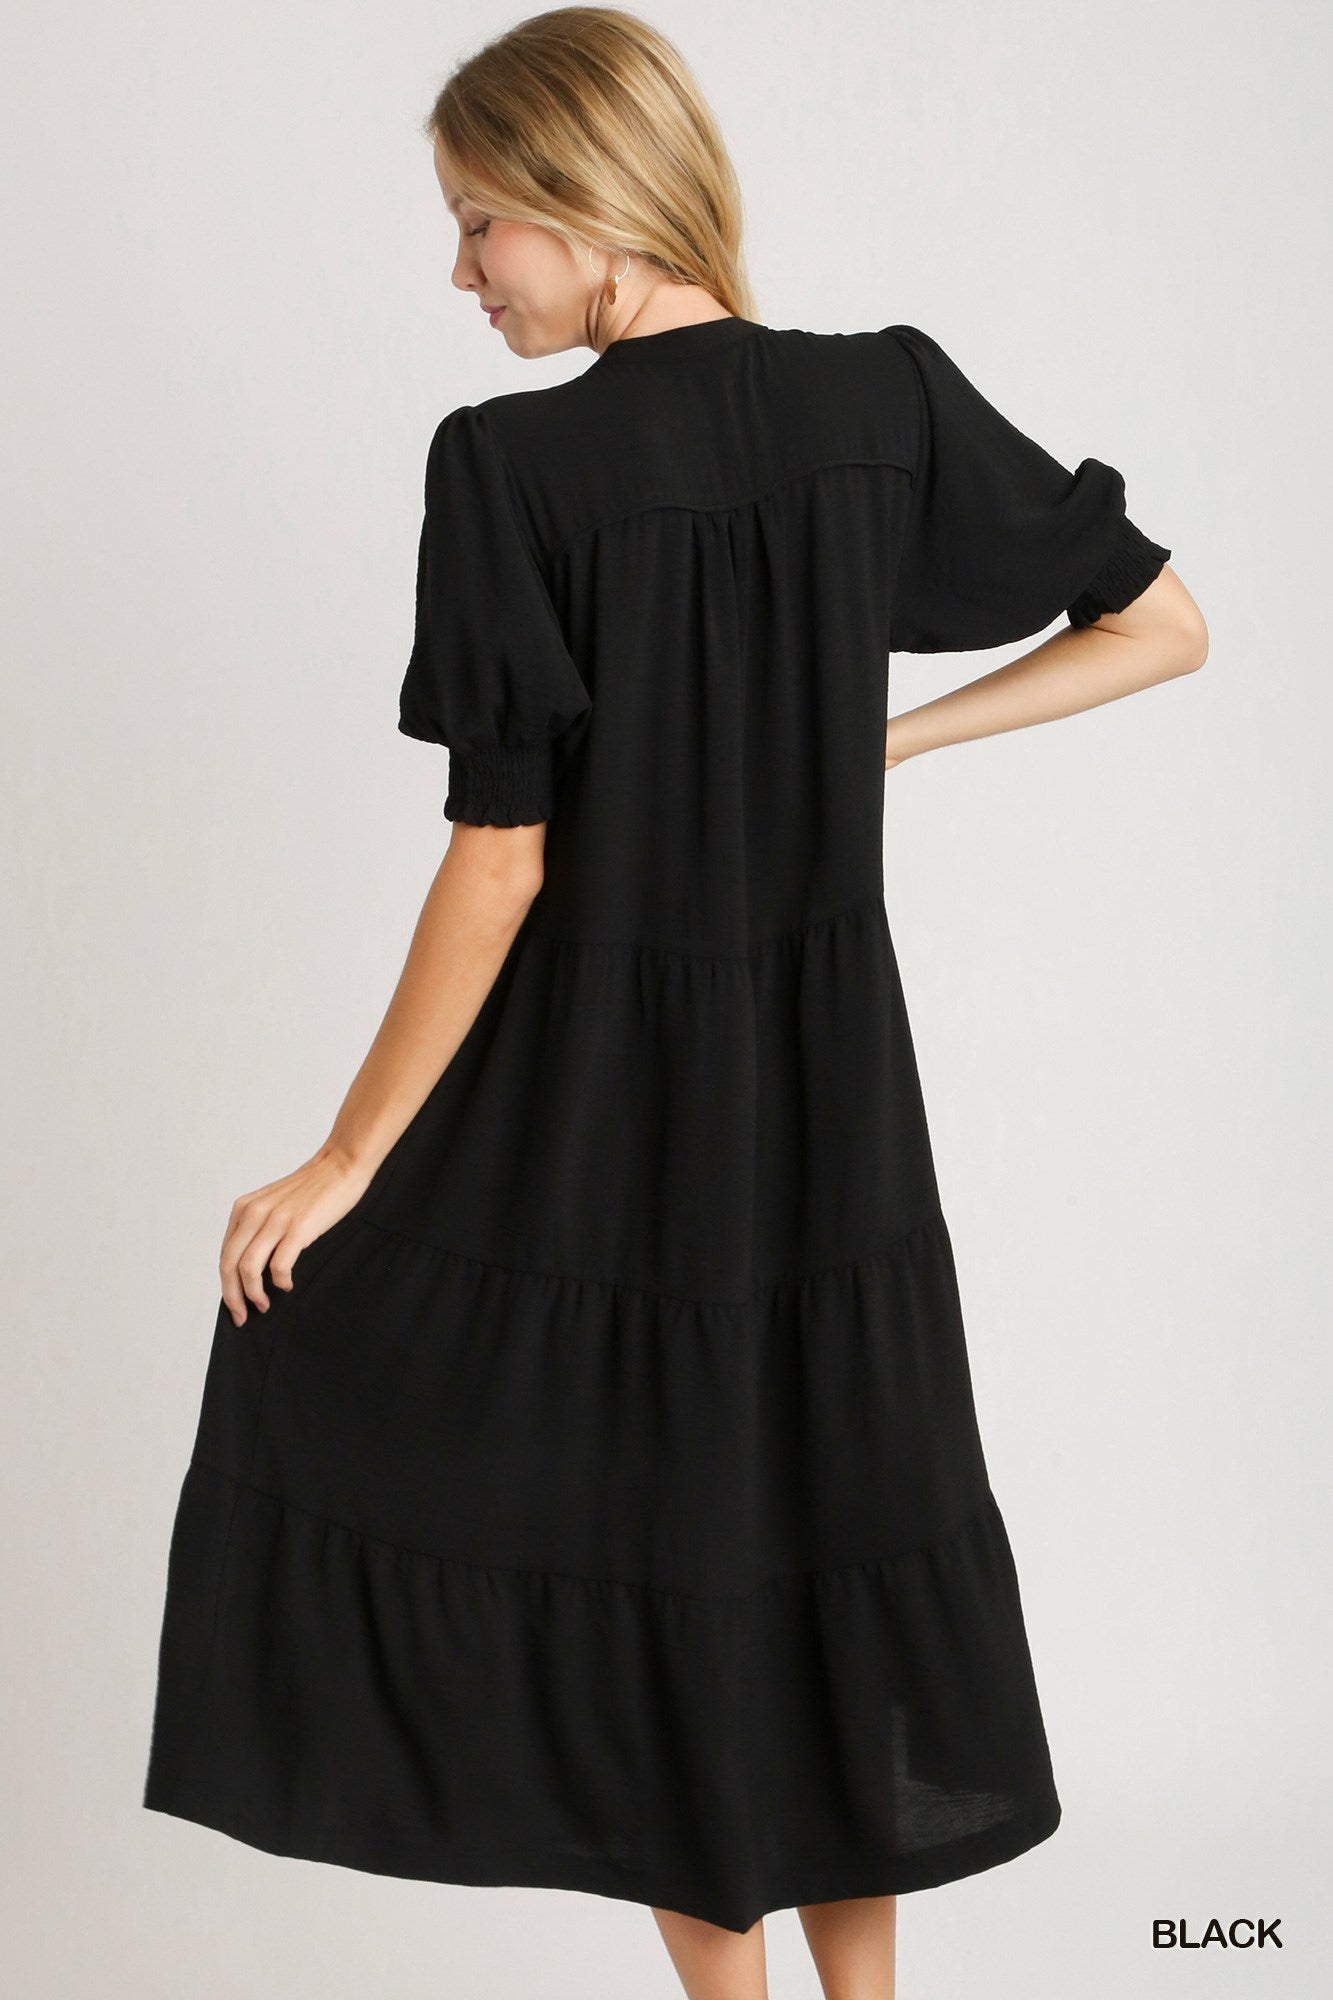 Solid Black Tiered Midi Dress